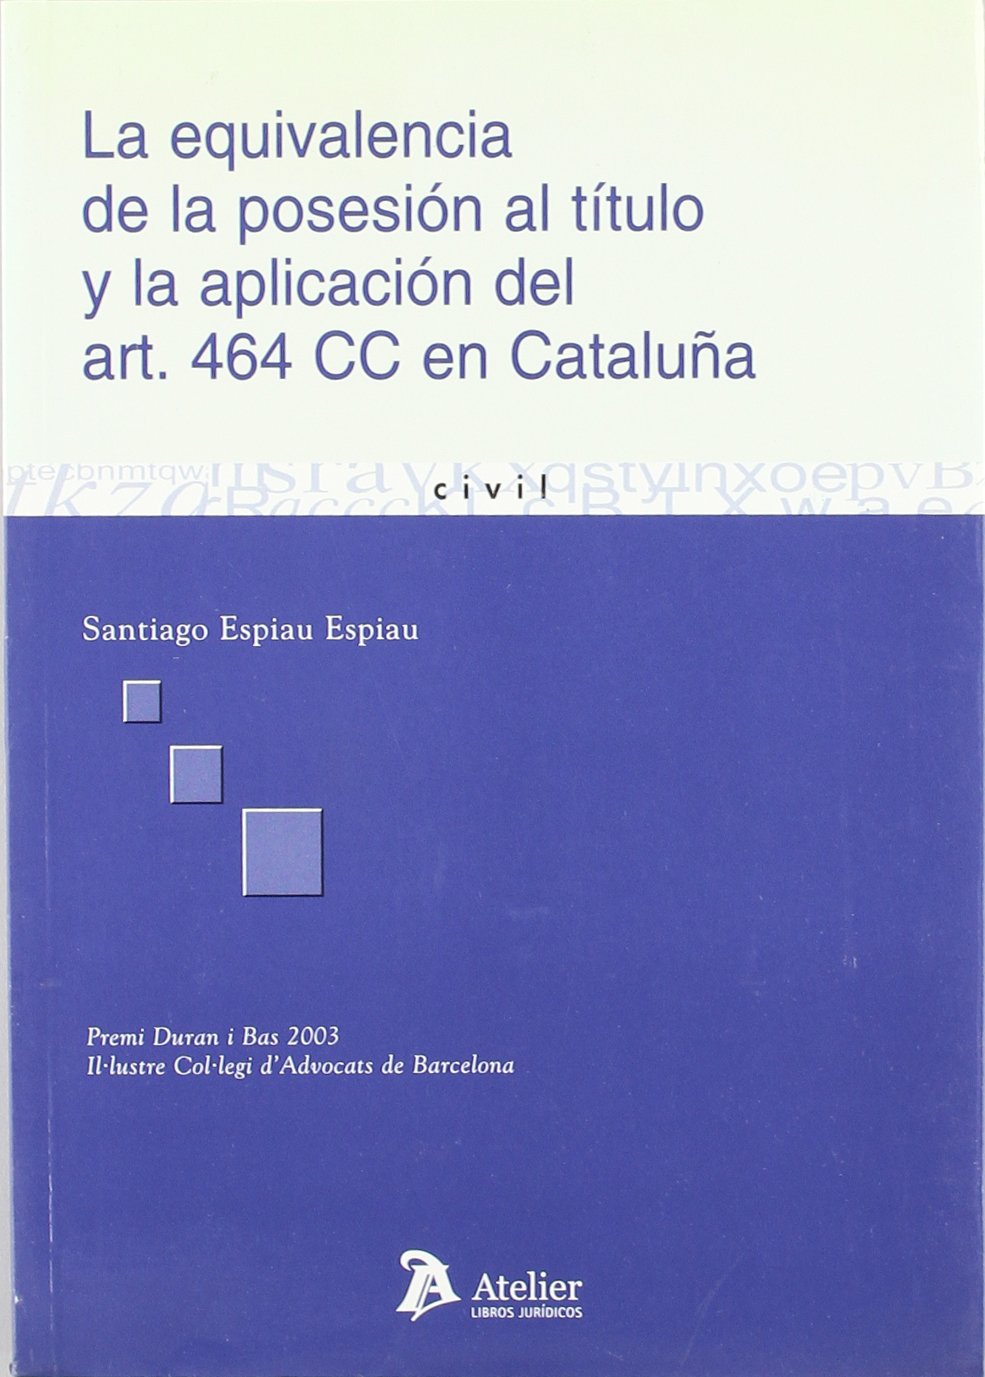 La equivalencia de la posesión al título y la aplicación del art. 464 CC en Cataluña